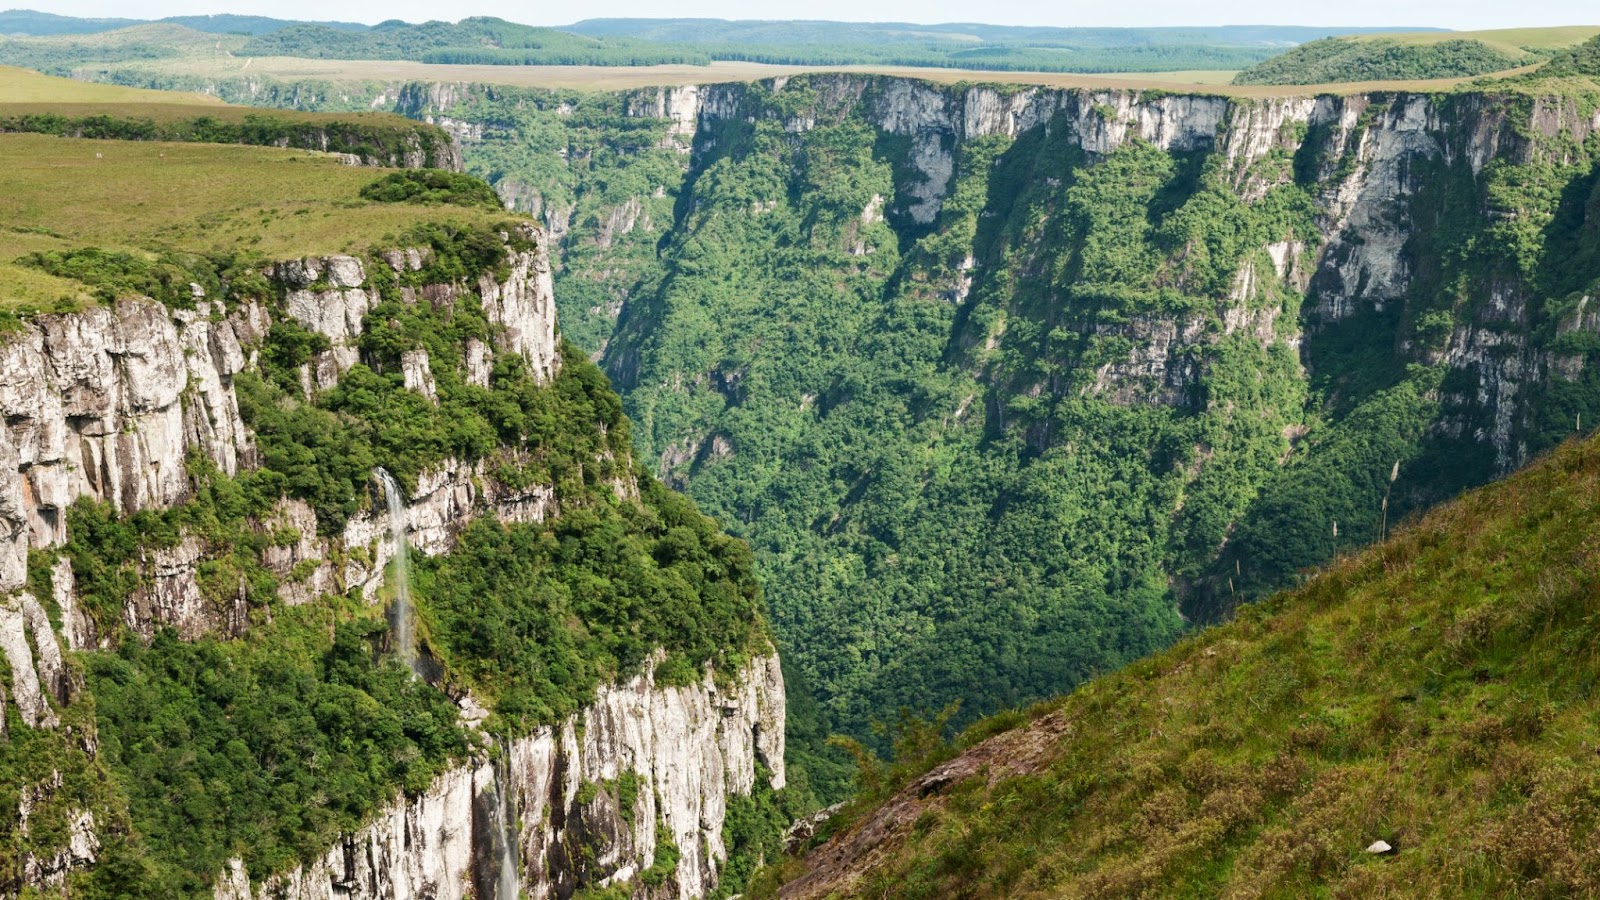 Cânion Fortaleza, no Parque Nacional da Serra Geral. Ele é formado por chapadões de rocha branca coloridos pelo verde da vegetação nativa